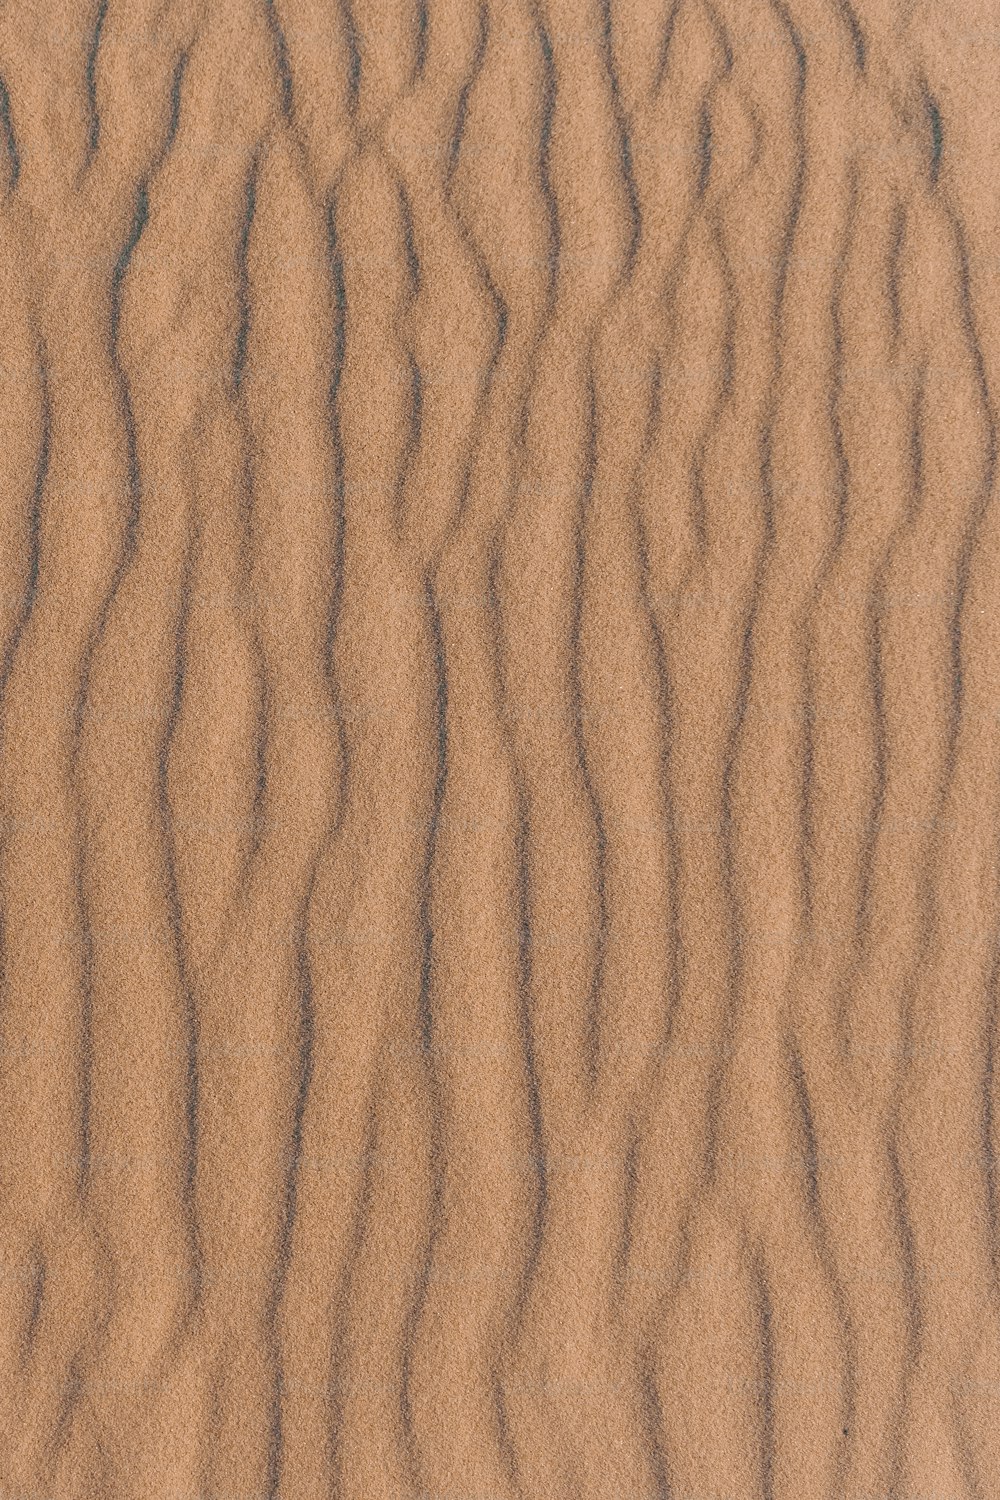 Nahaufnahme einer Sanddüne mit Wellenlinien